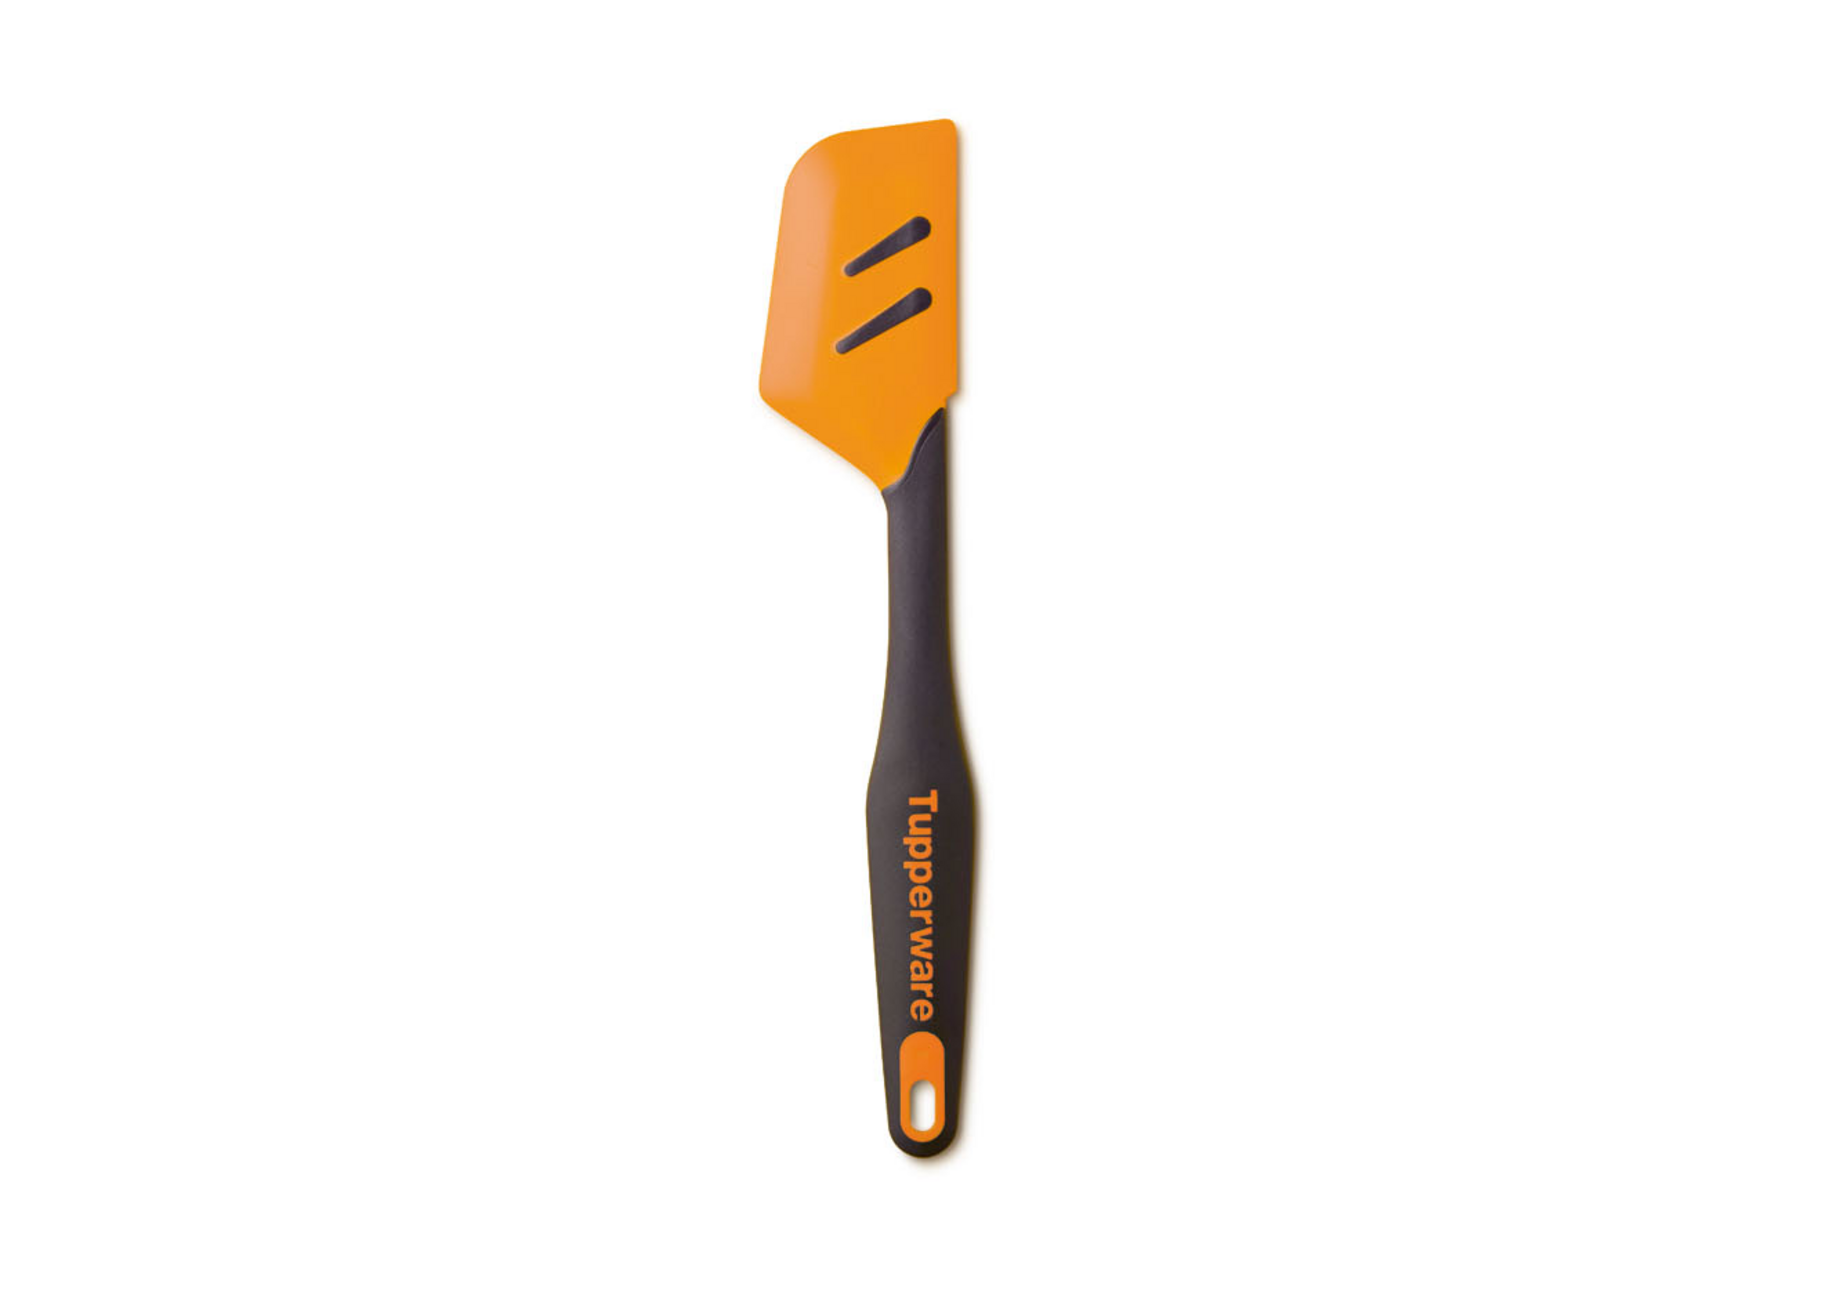 Maryse spatule, 34 cm, manche en plastique, résistant à la chaleur